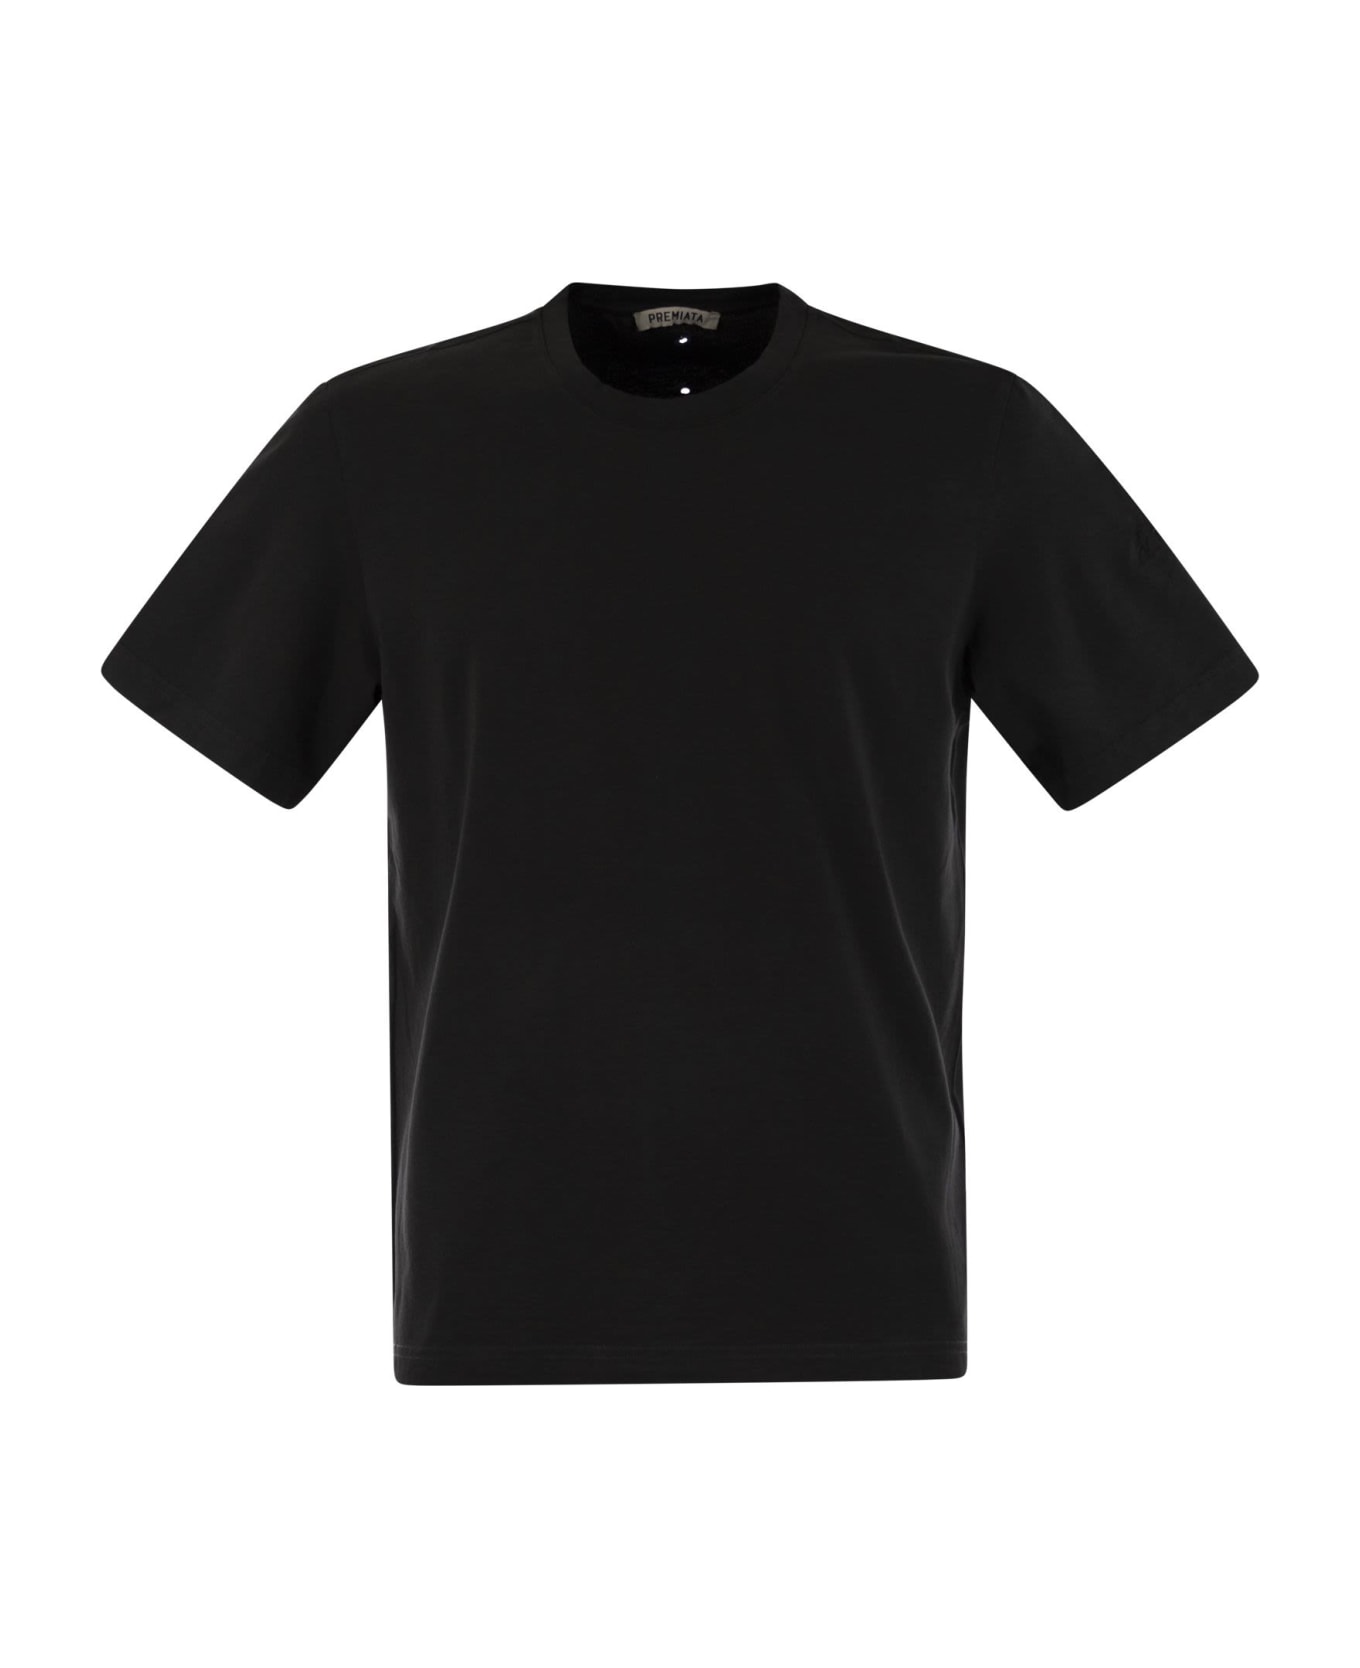 Premiata Cotton Jersey T-shirt - Black